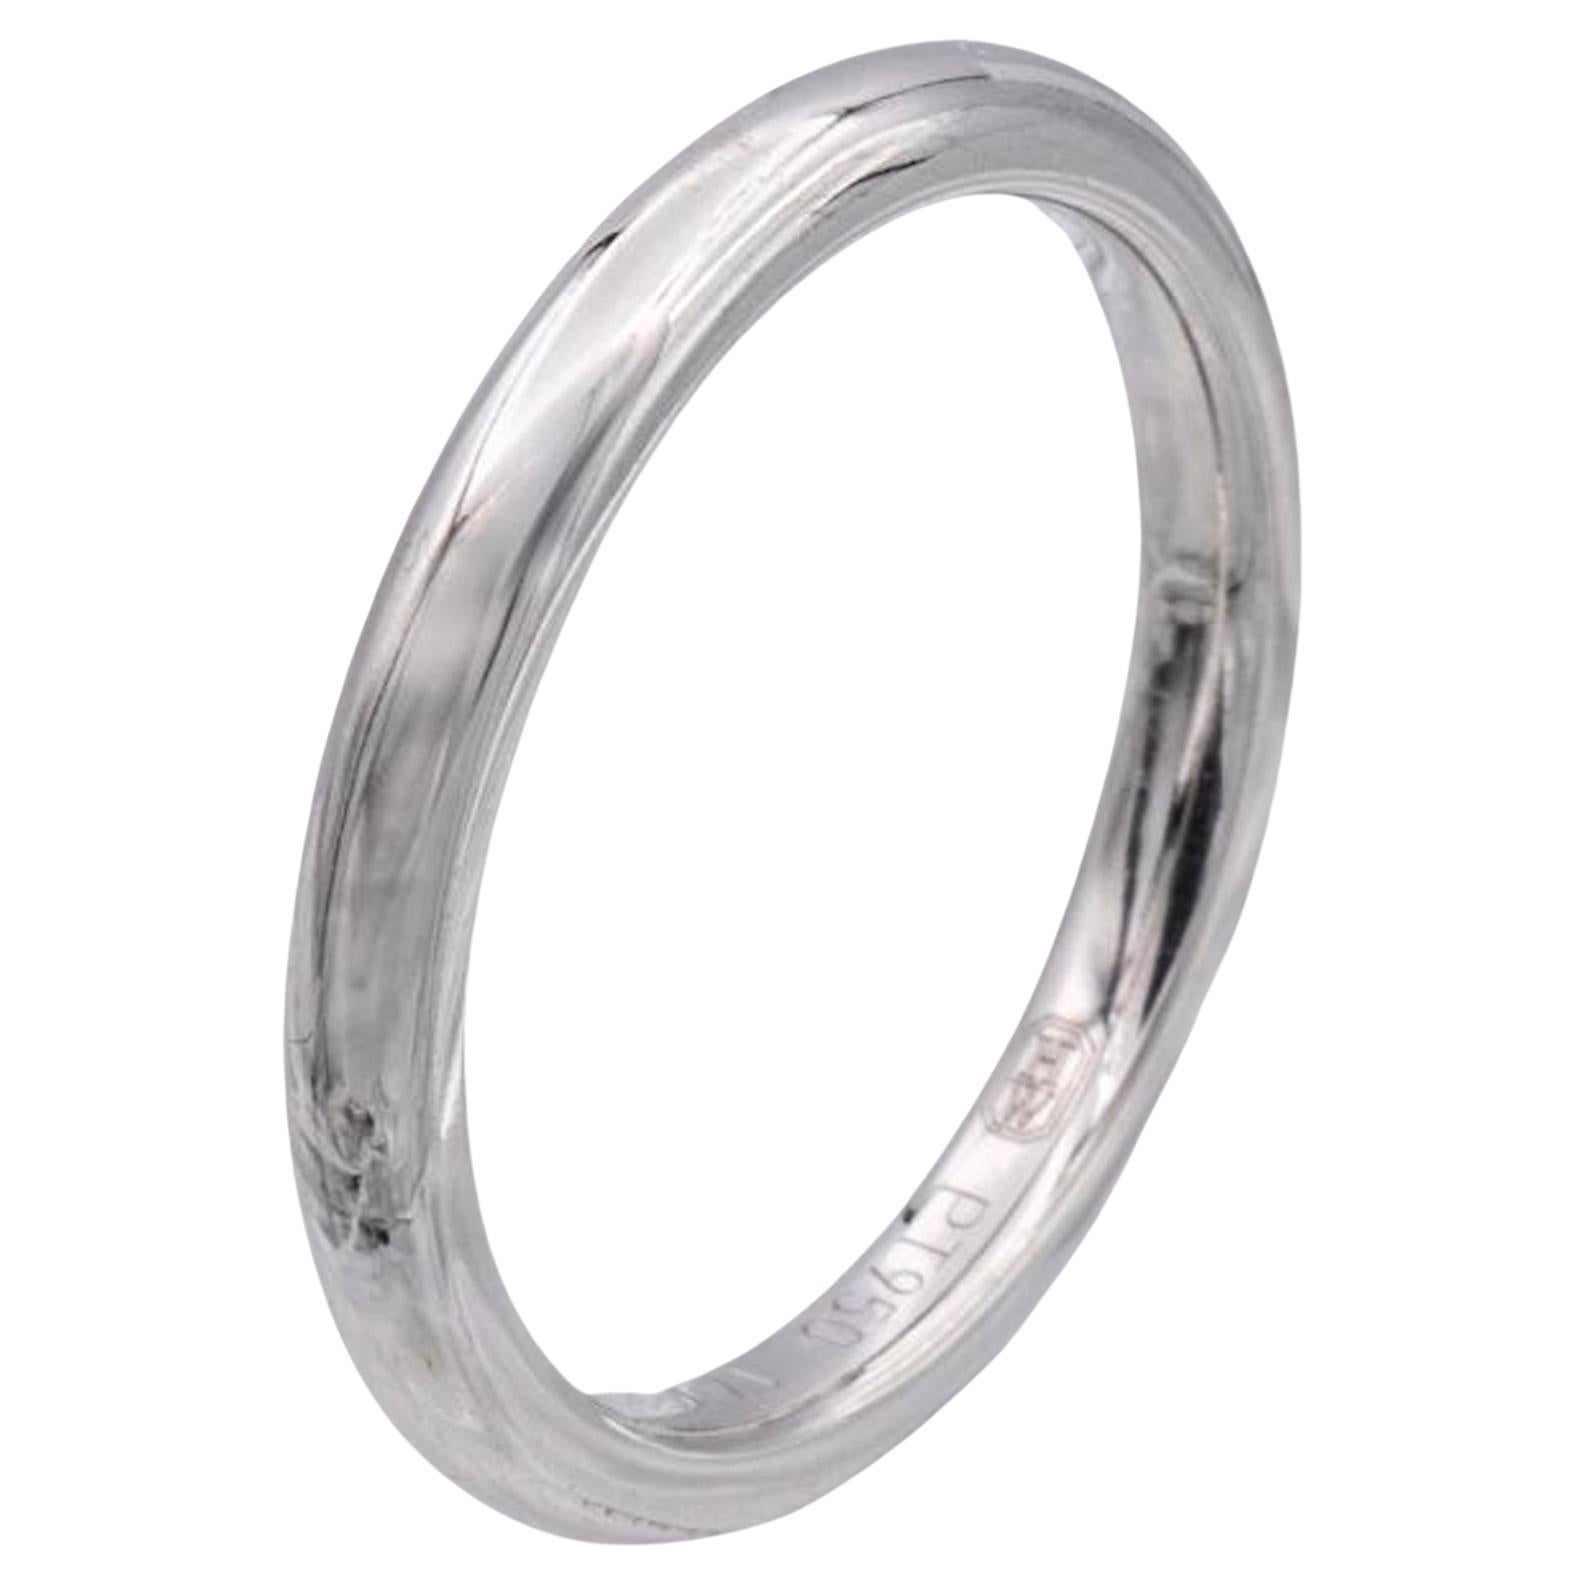 Harry Winston Platinum Rounded Wedding Band Ring